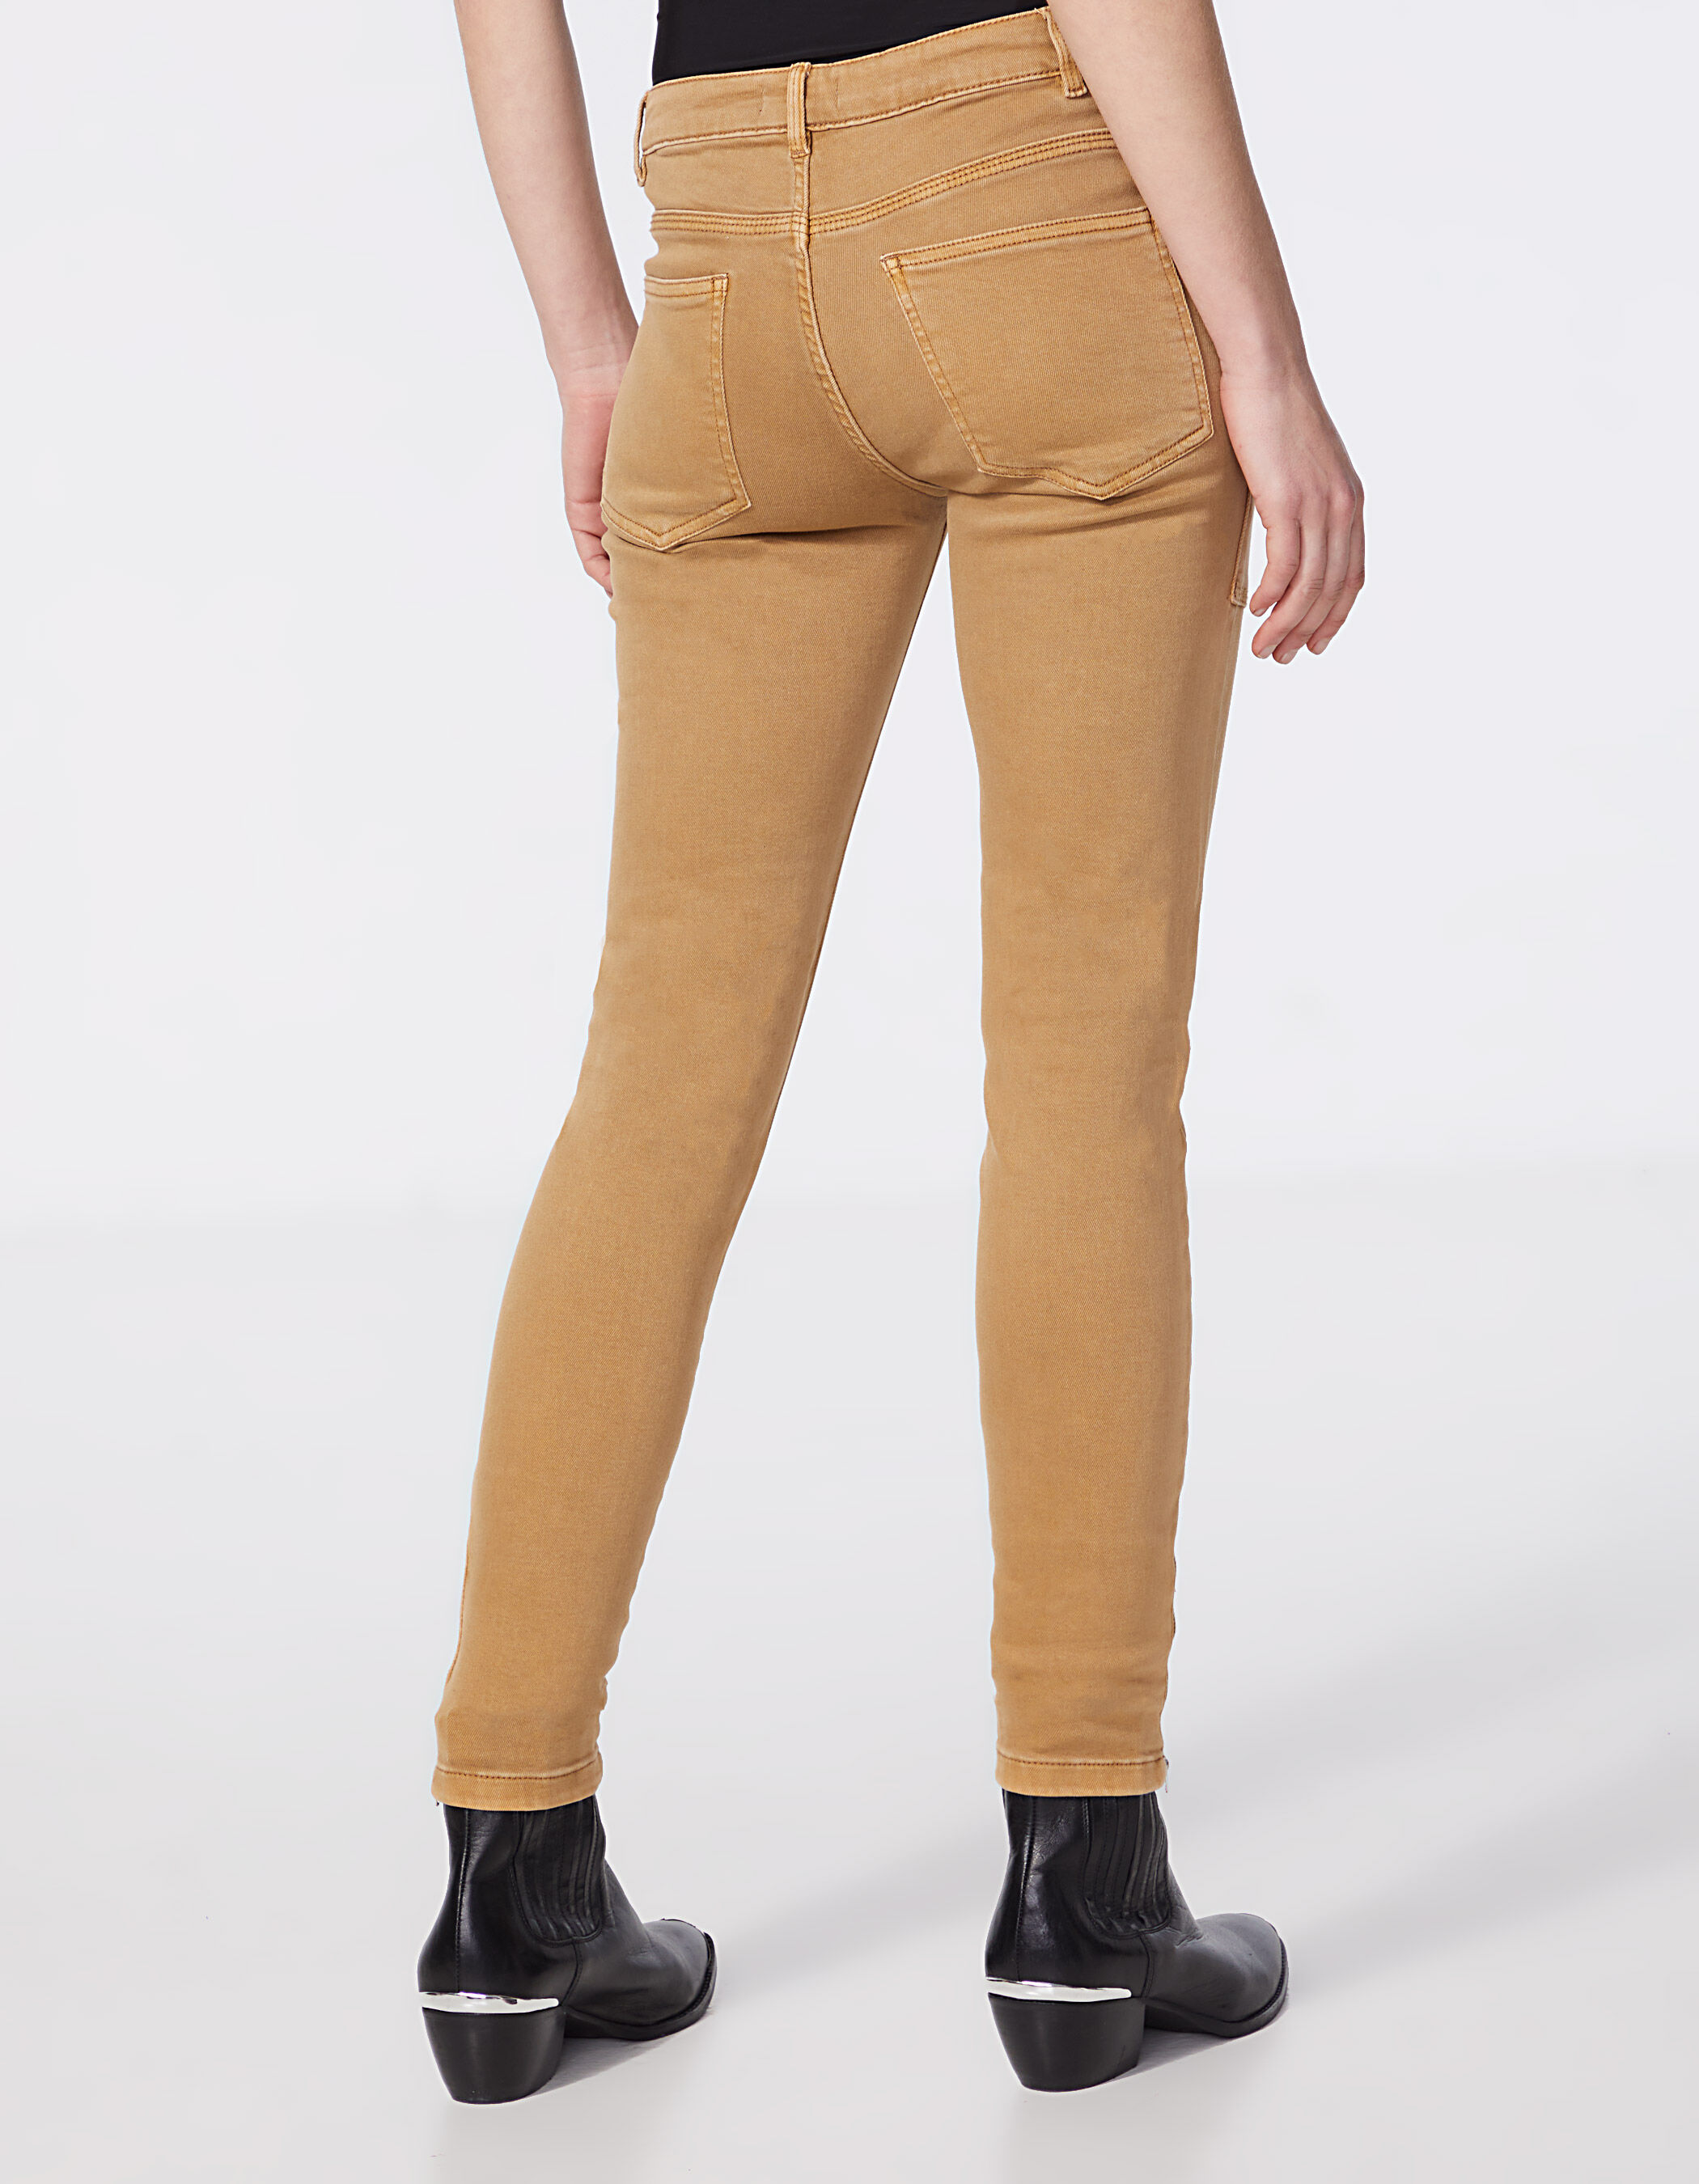 IKKS Jeggings & Skinny & Slim WOMEN FASHION Jeans Worn-in Gray 36                  EU discount 80% 